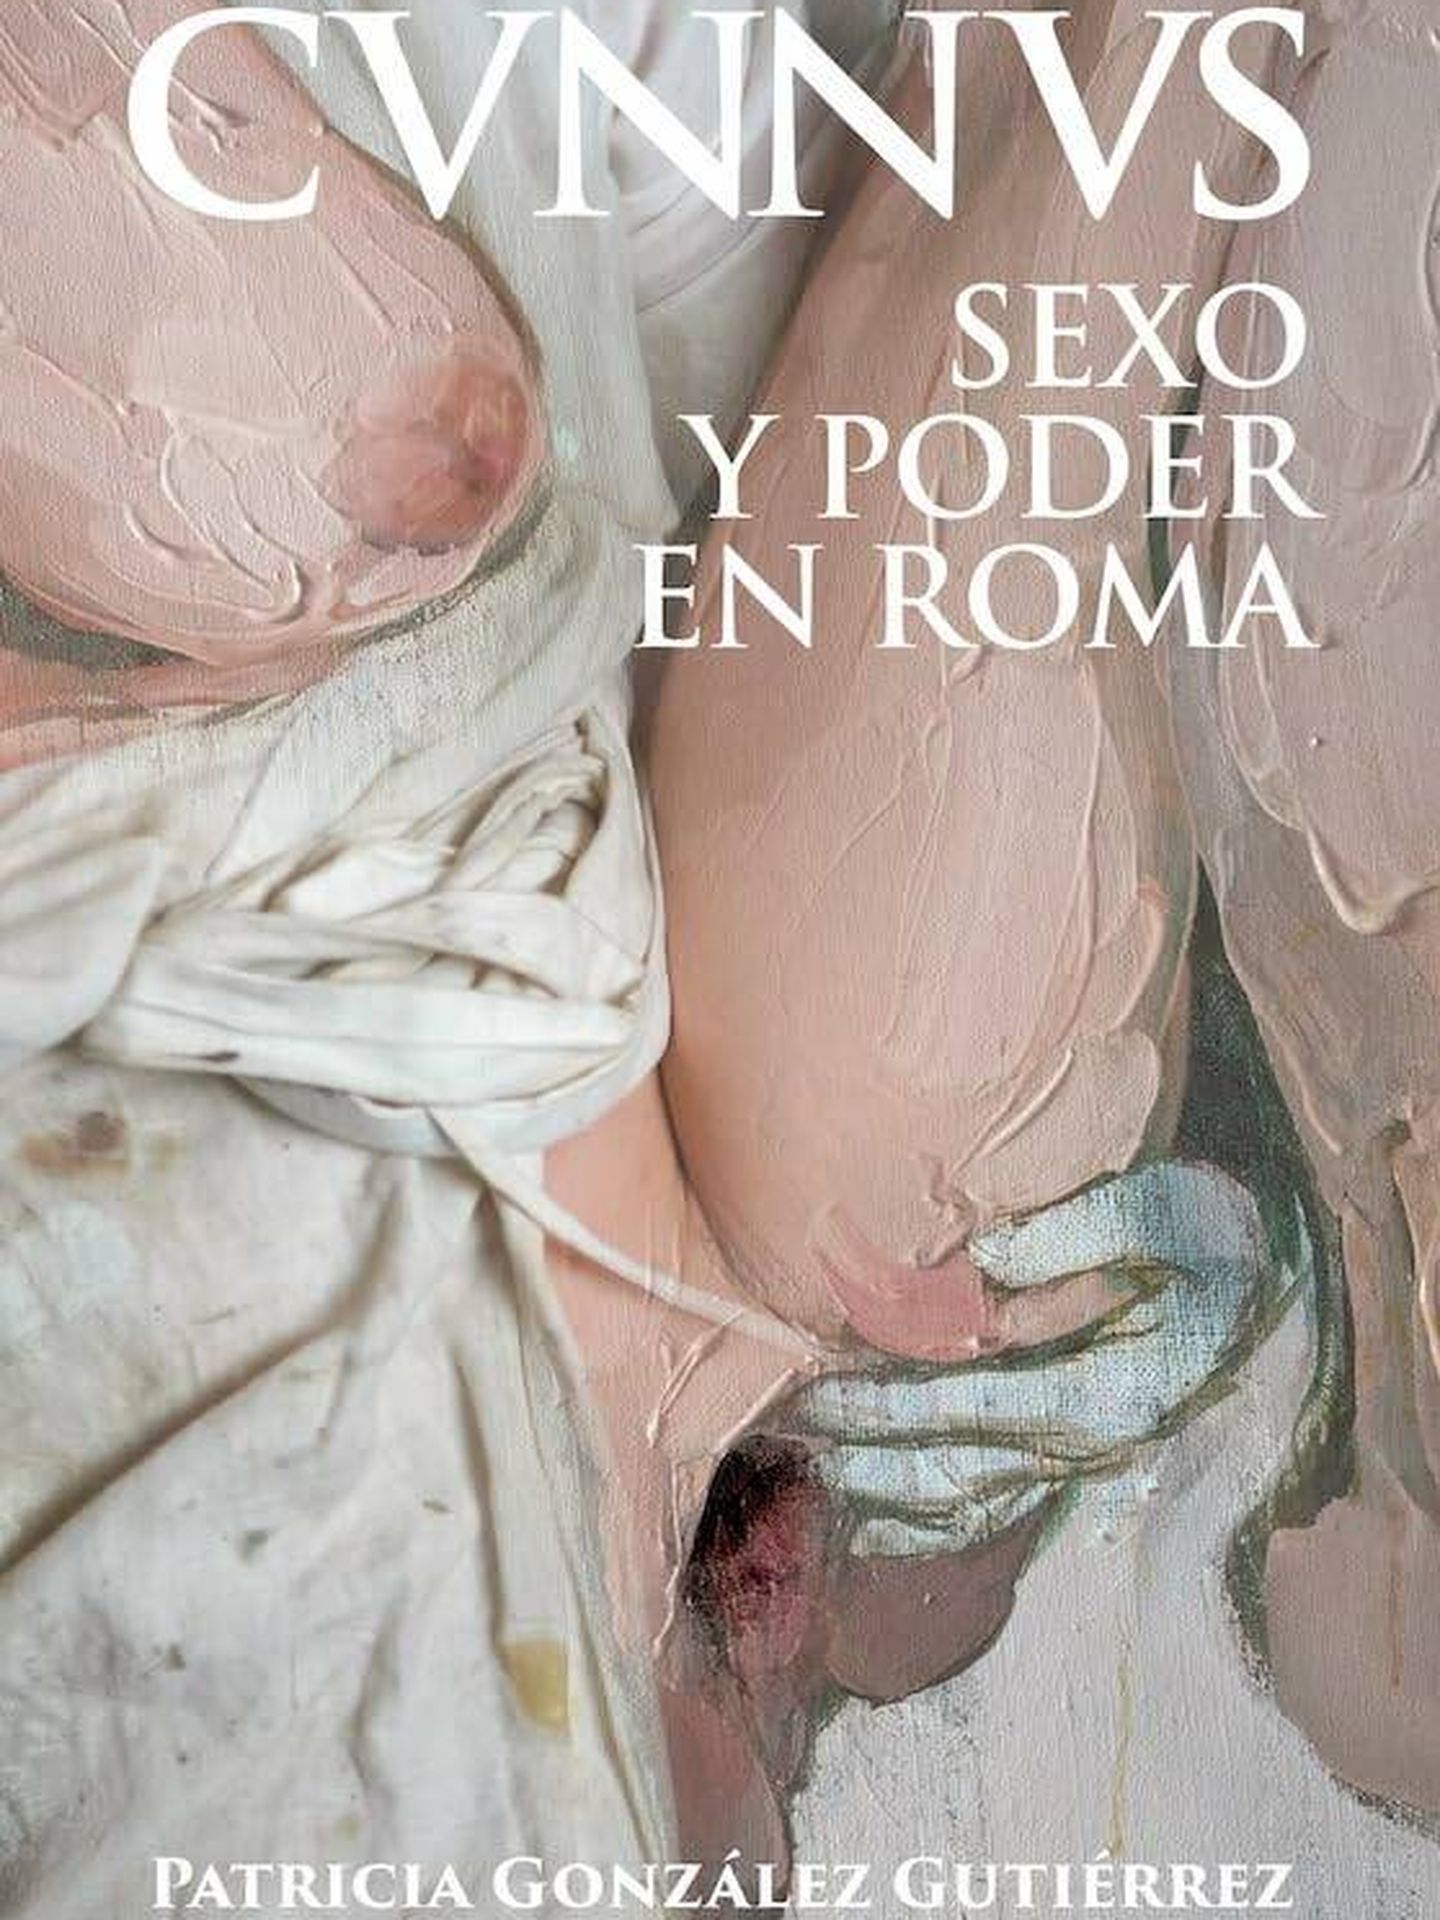 Portada de 'Cvnnvs. Sexo y poder en Roma', de la historiadora Patricia González Gutiérrez.